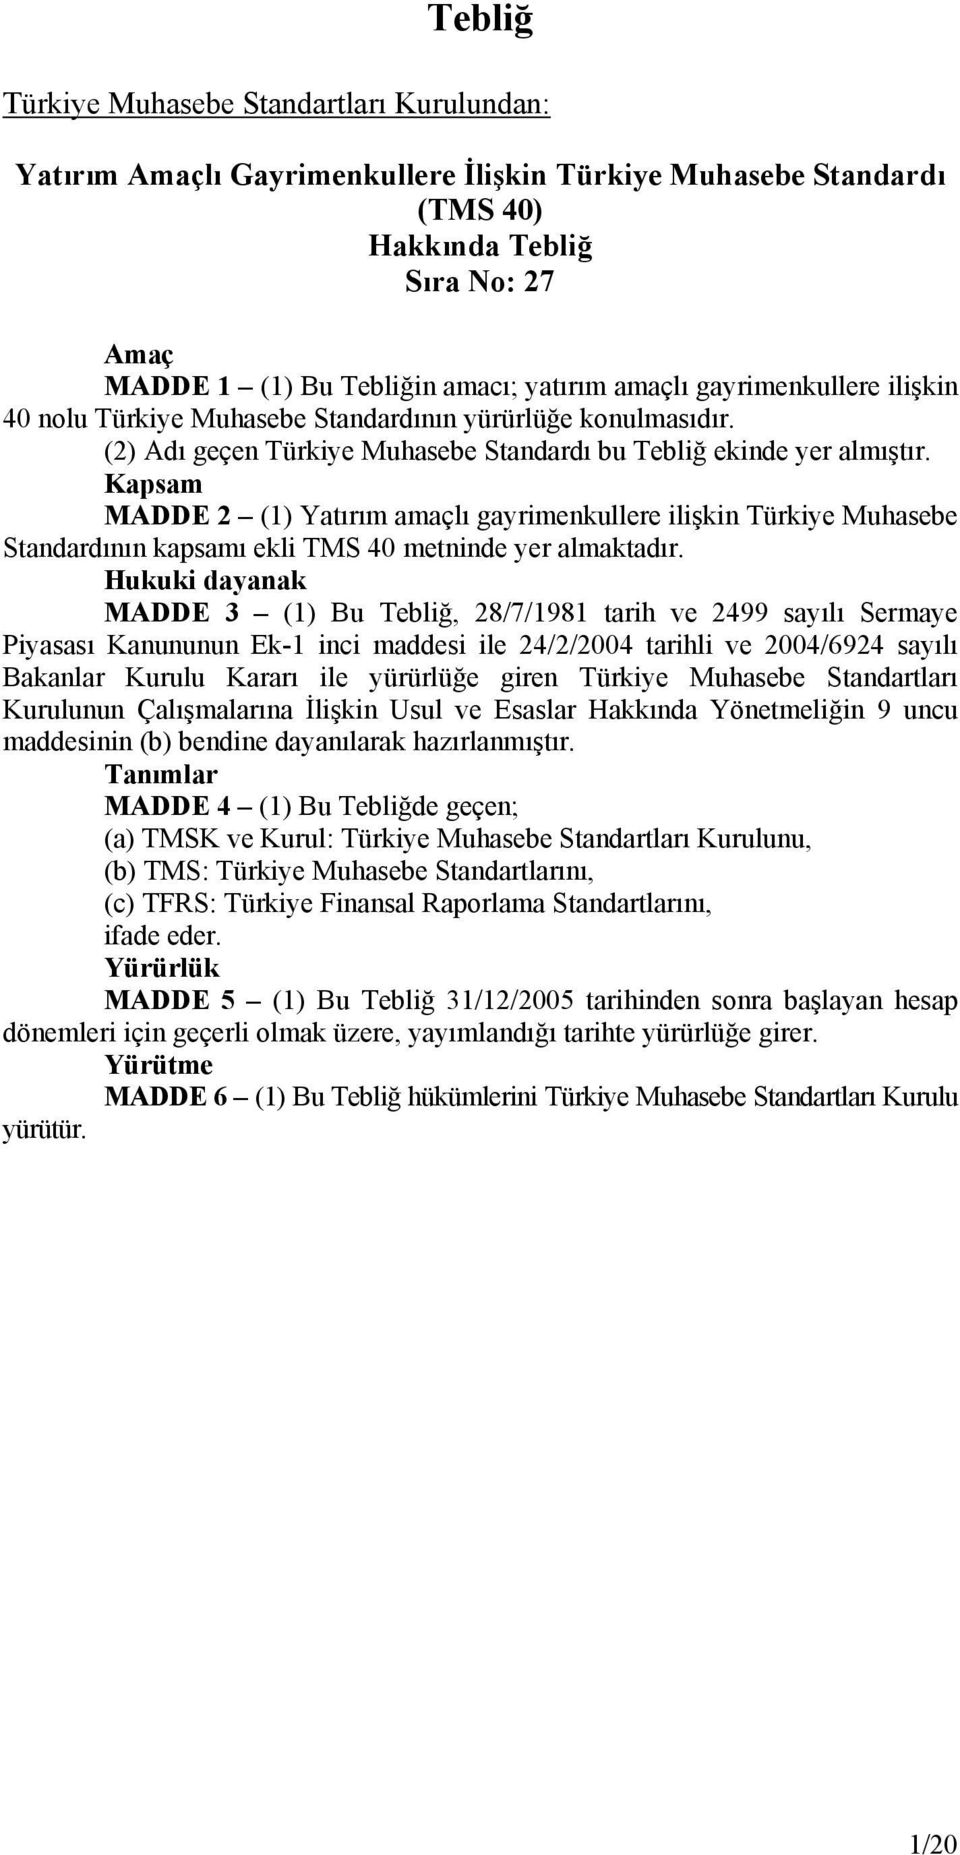 Kapsam MADDE 2 (1) Yatırım amaçlı gayrimenkullere ilişkin Türkiye Muhasebe Standardının kapsamı ekli TMS 40 metninde yer almaktadır.